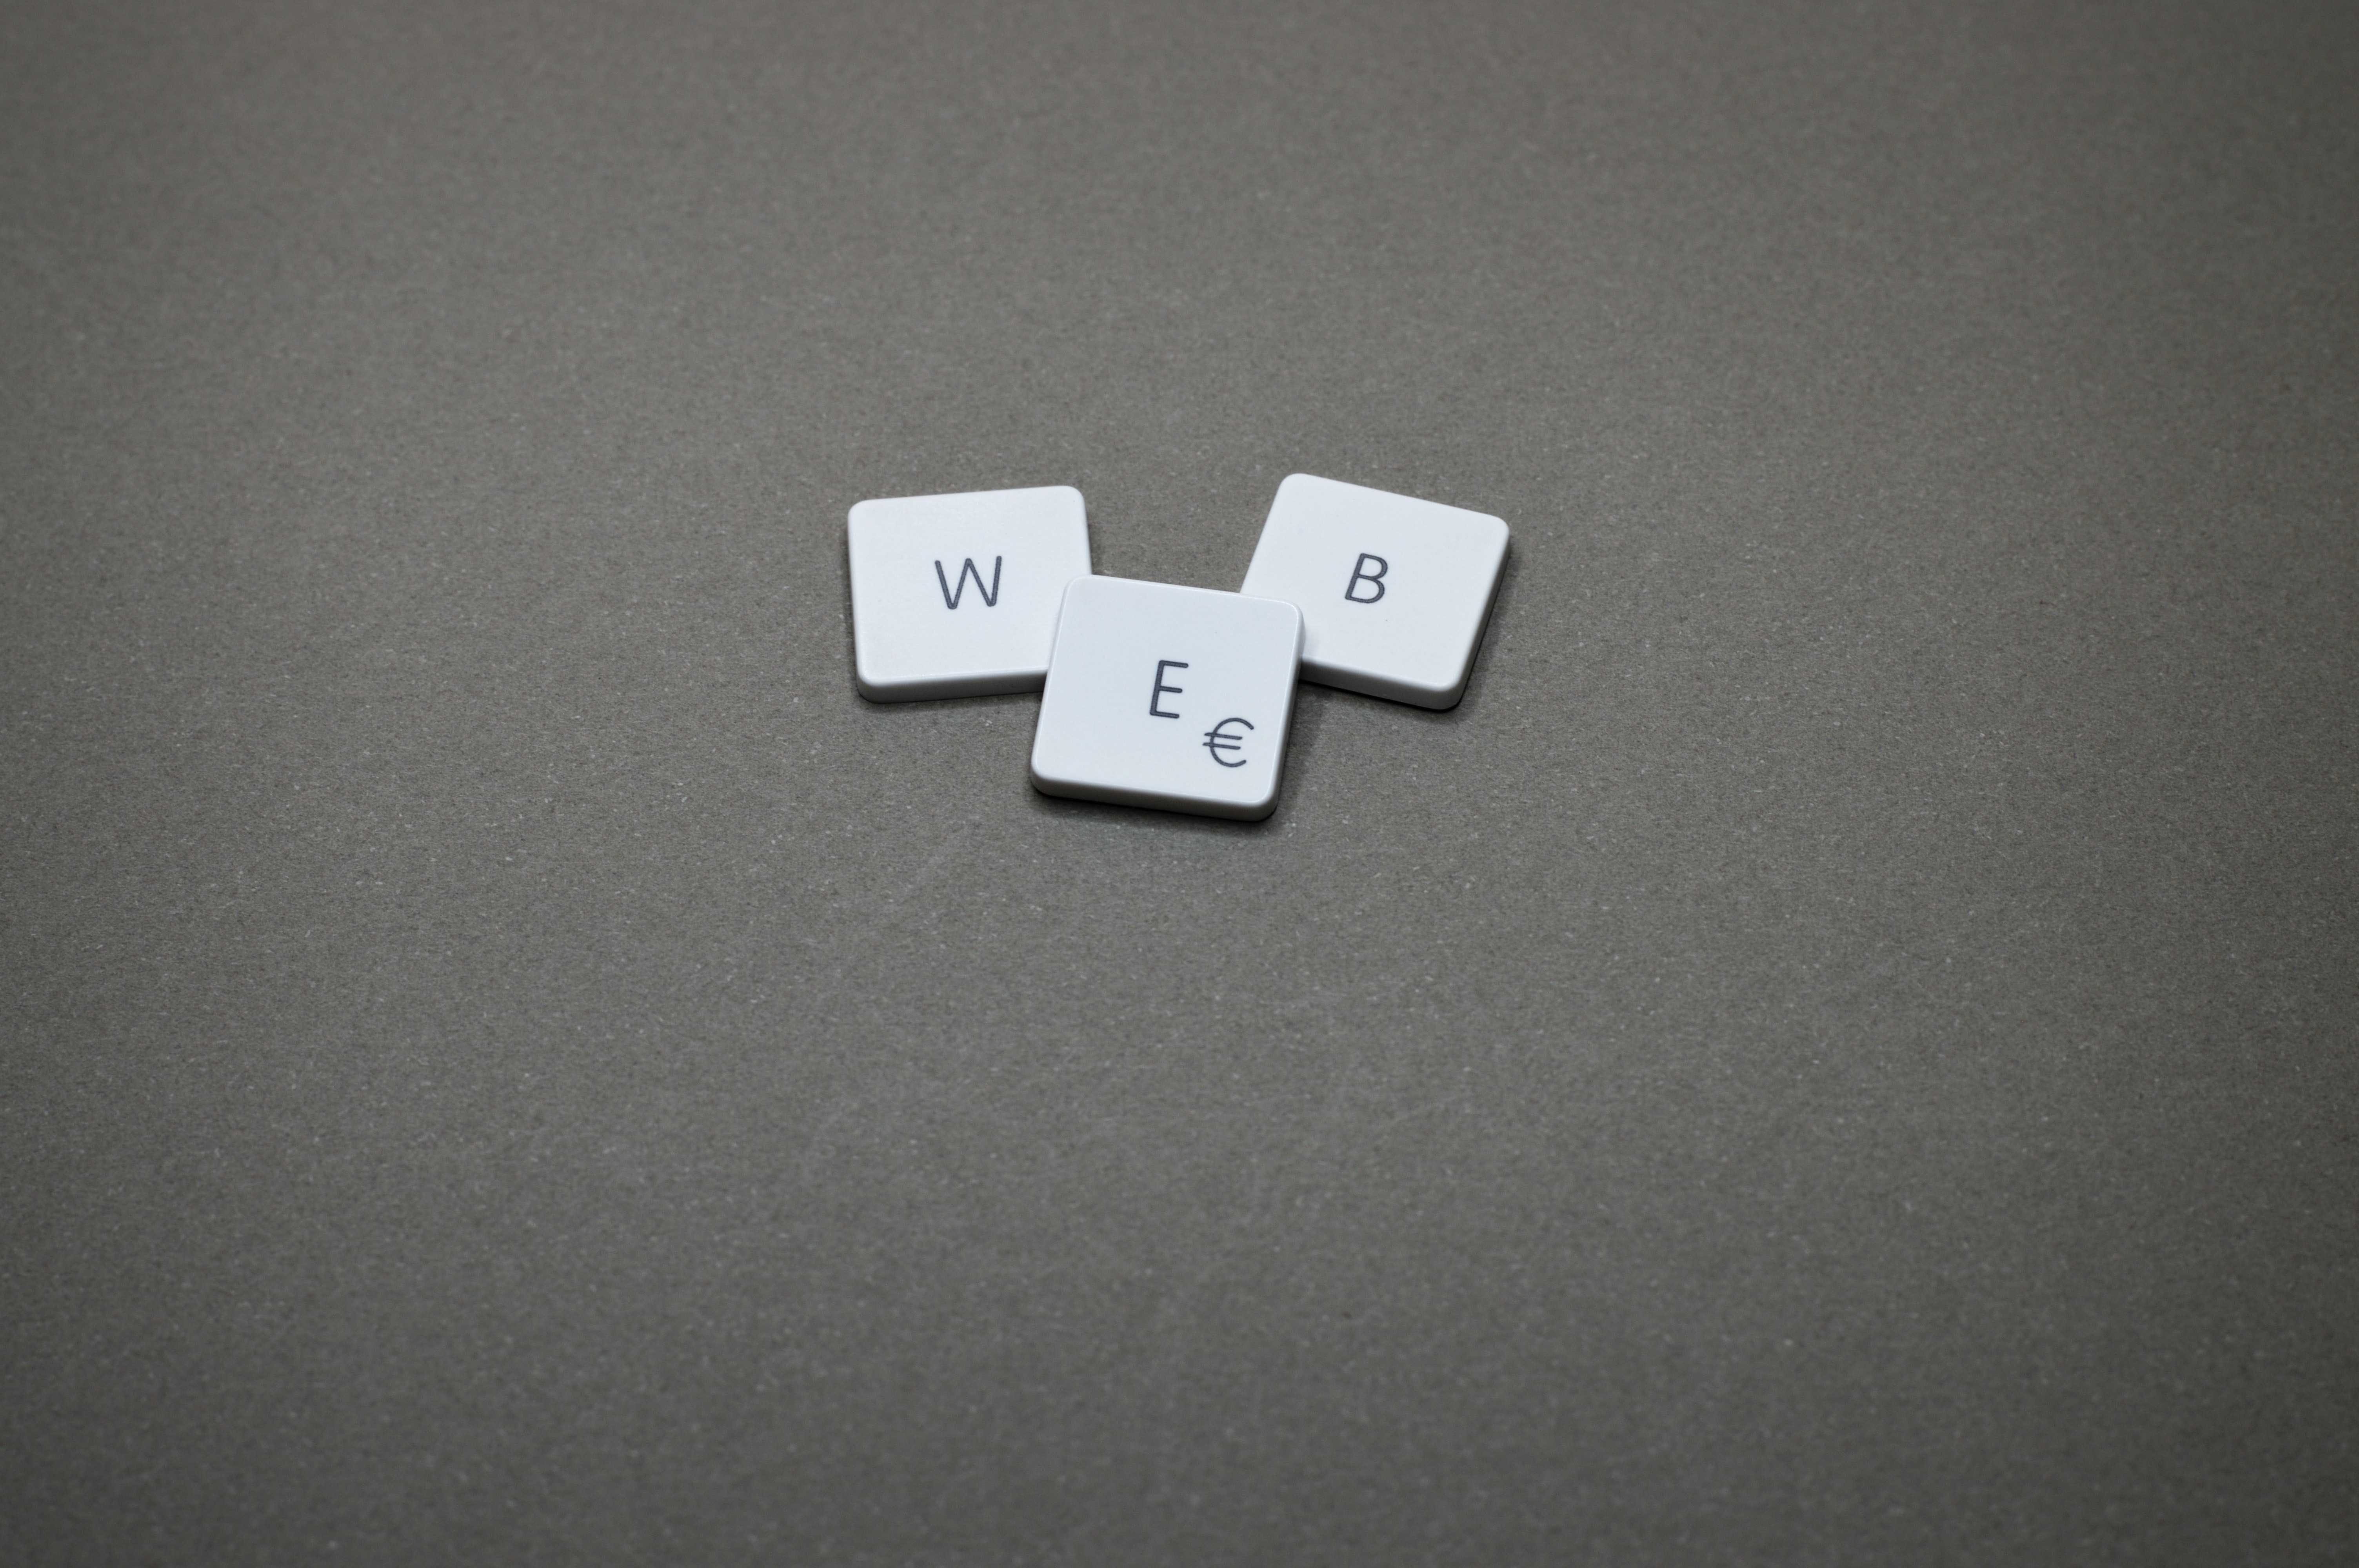 Web 3.0: що це та як нова епоха інтернету впливає на розробку програм